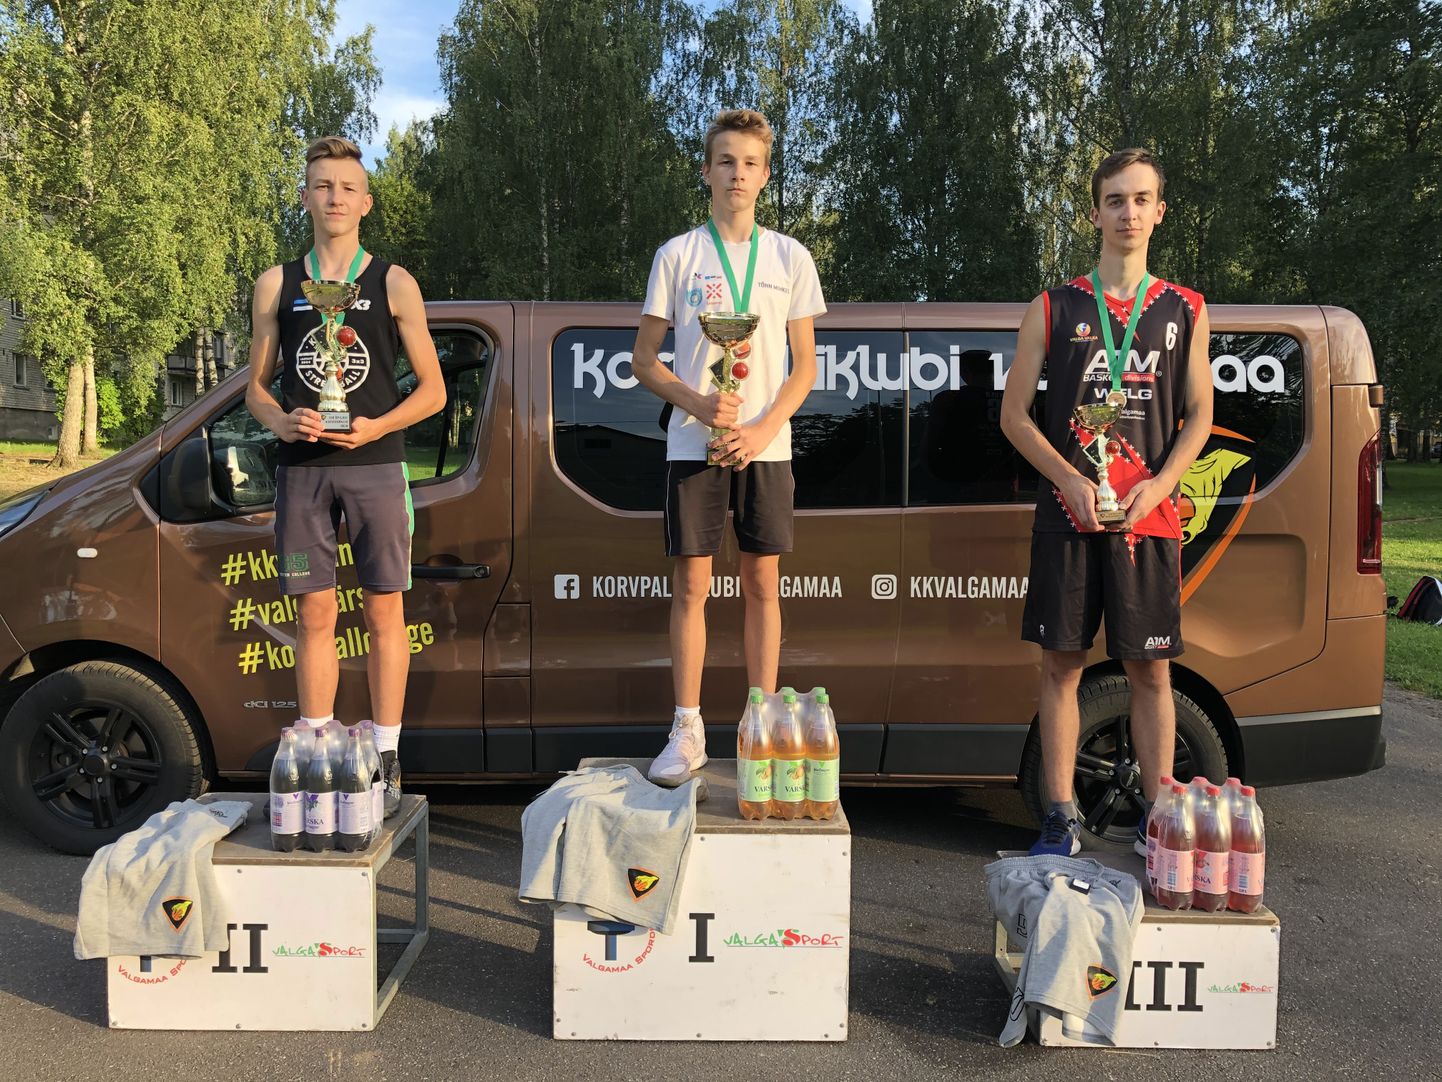 Suurte arvestuses võitis Tõnn Mihkel Raju (Värska), teiseks tuli Uku Pärtel Raju (Värska) ja kolmanda koha saavutas Kermo Kuld (Valga).